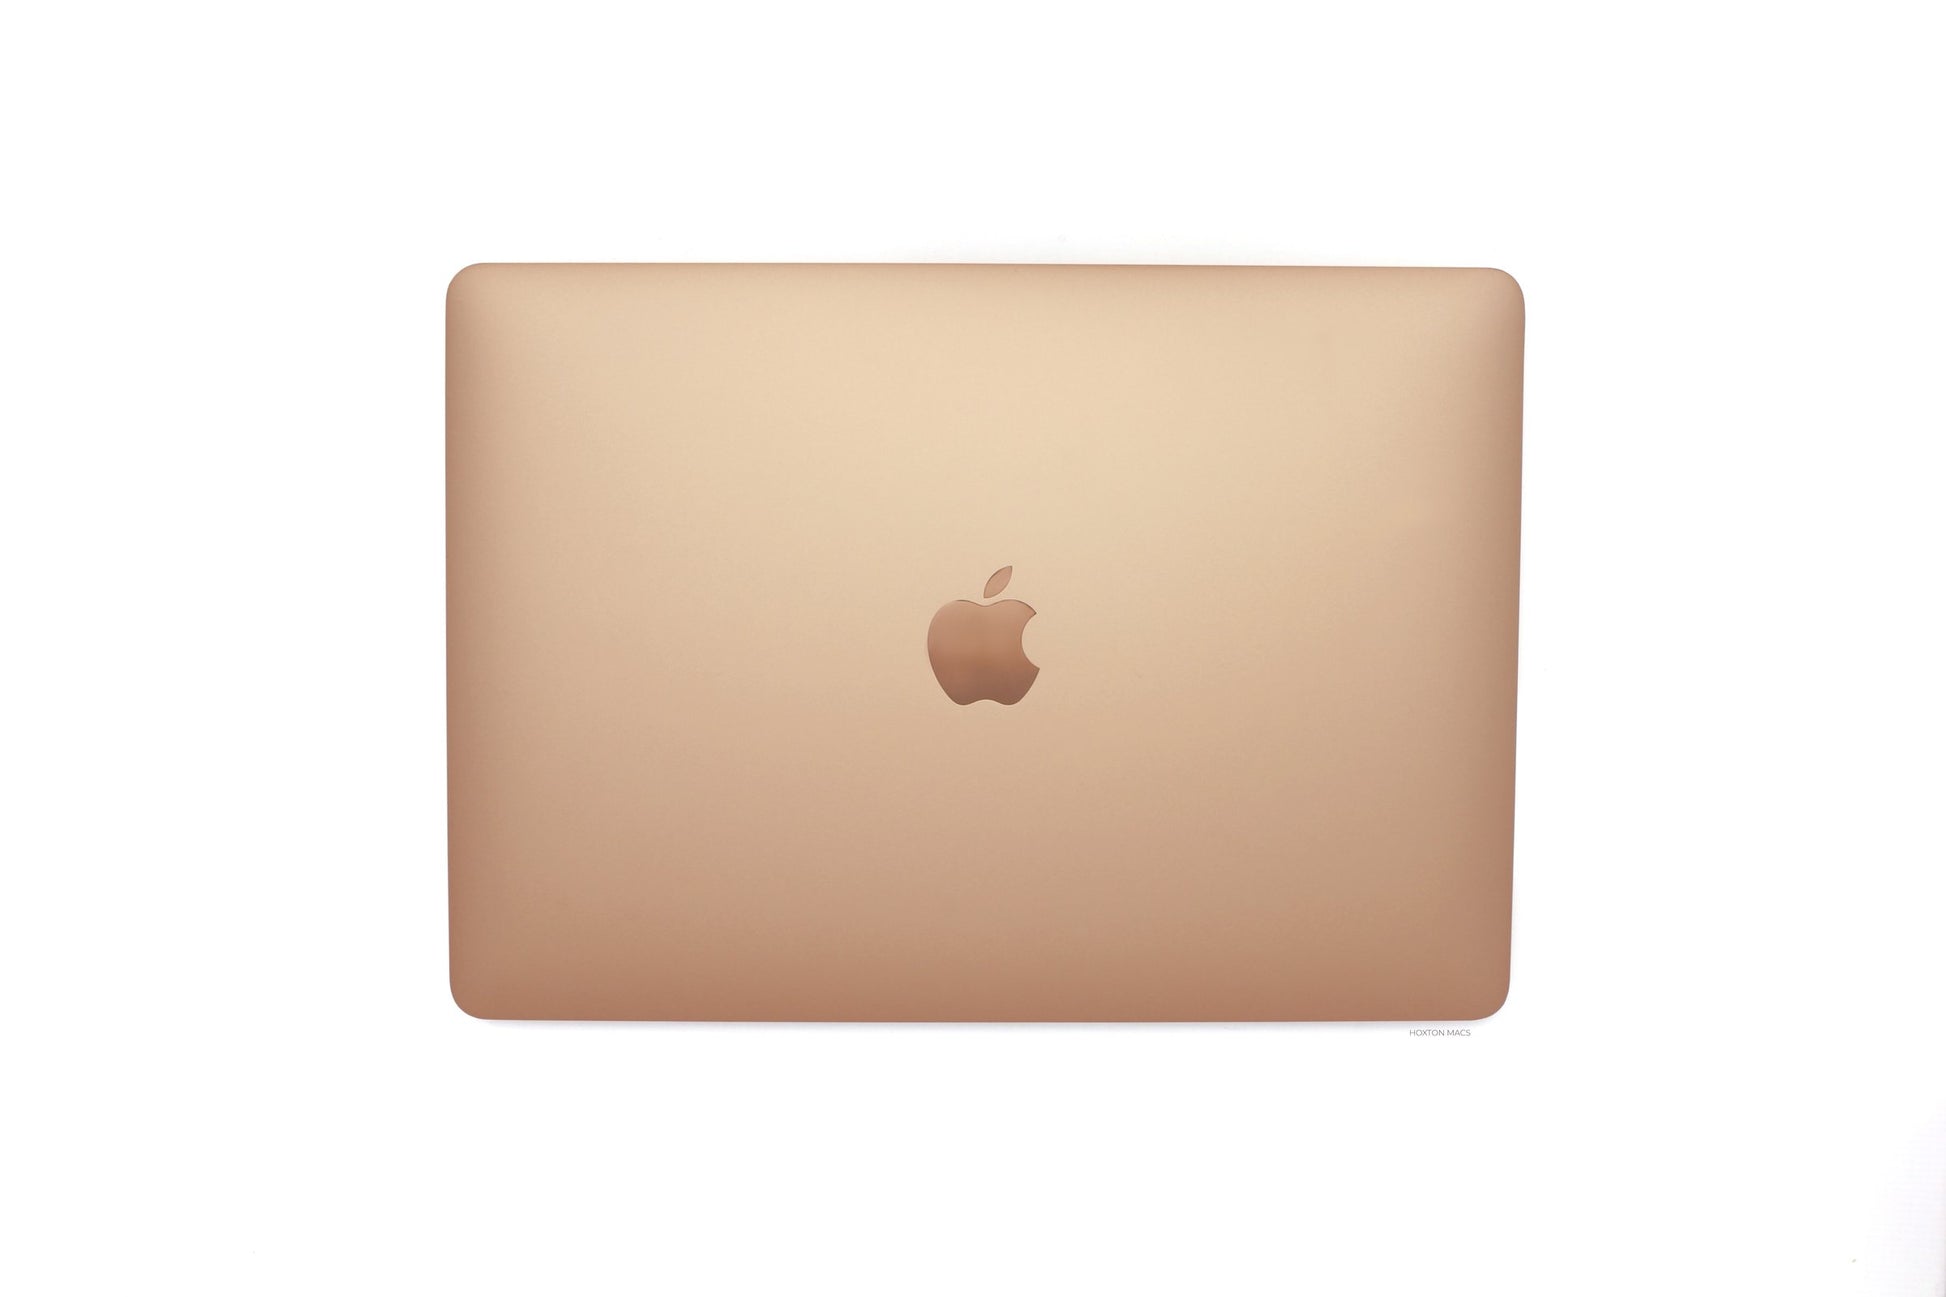 MacBook Air i5 1.1GHz 13 inch 2020 - 512GB SSD - 8GB Ram